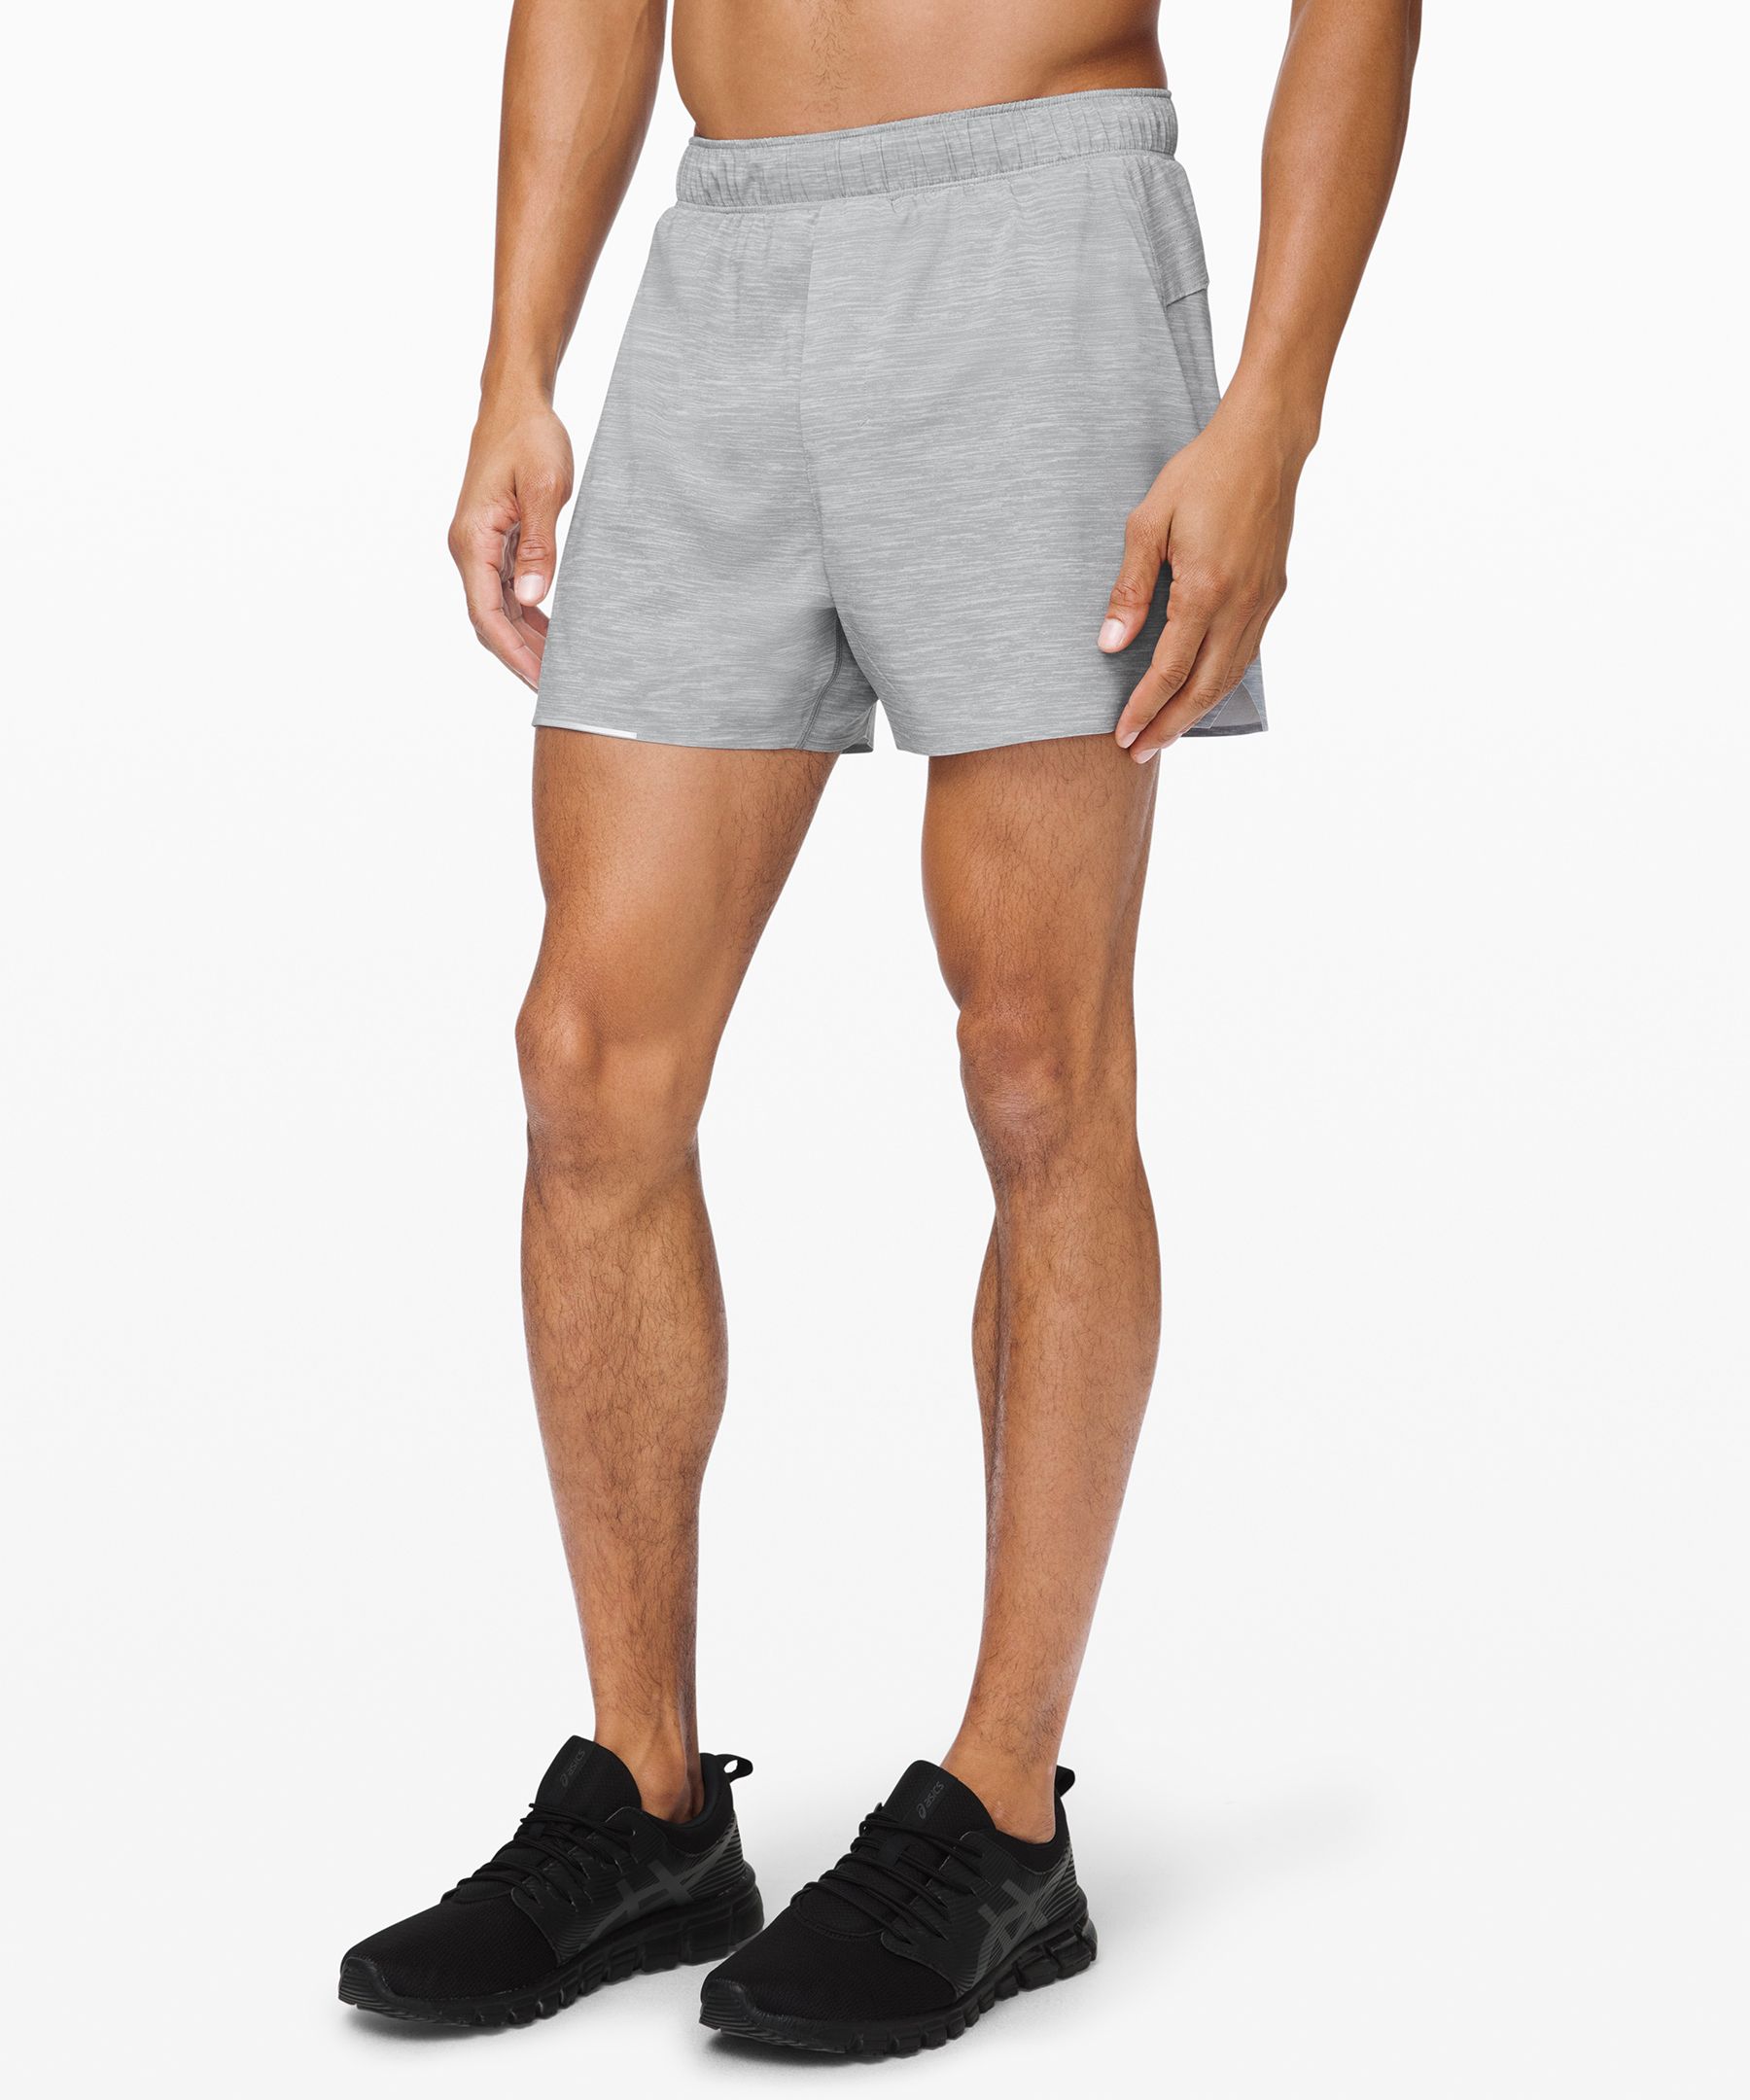 lululemon shorts men's